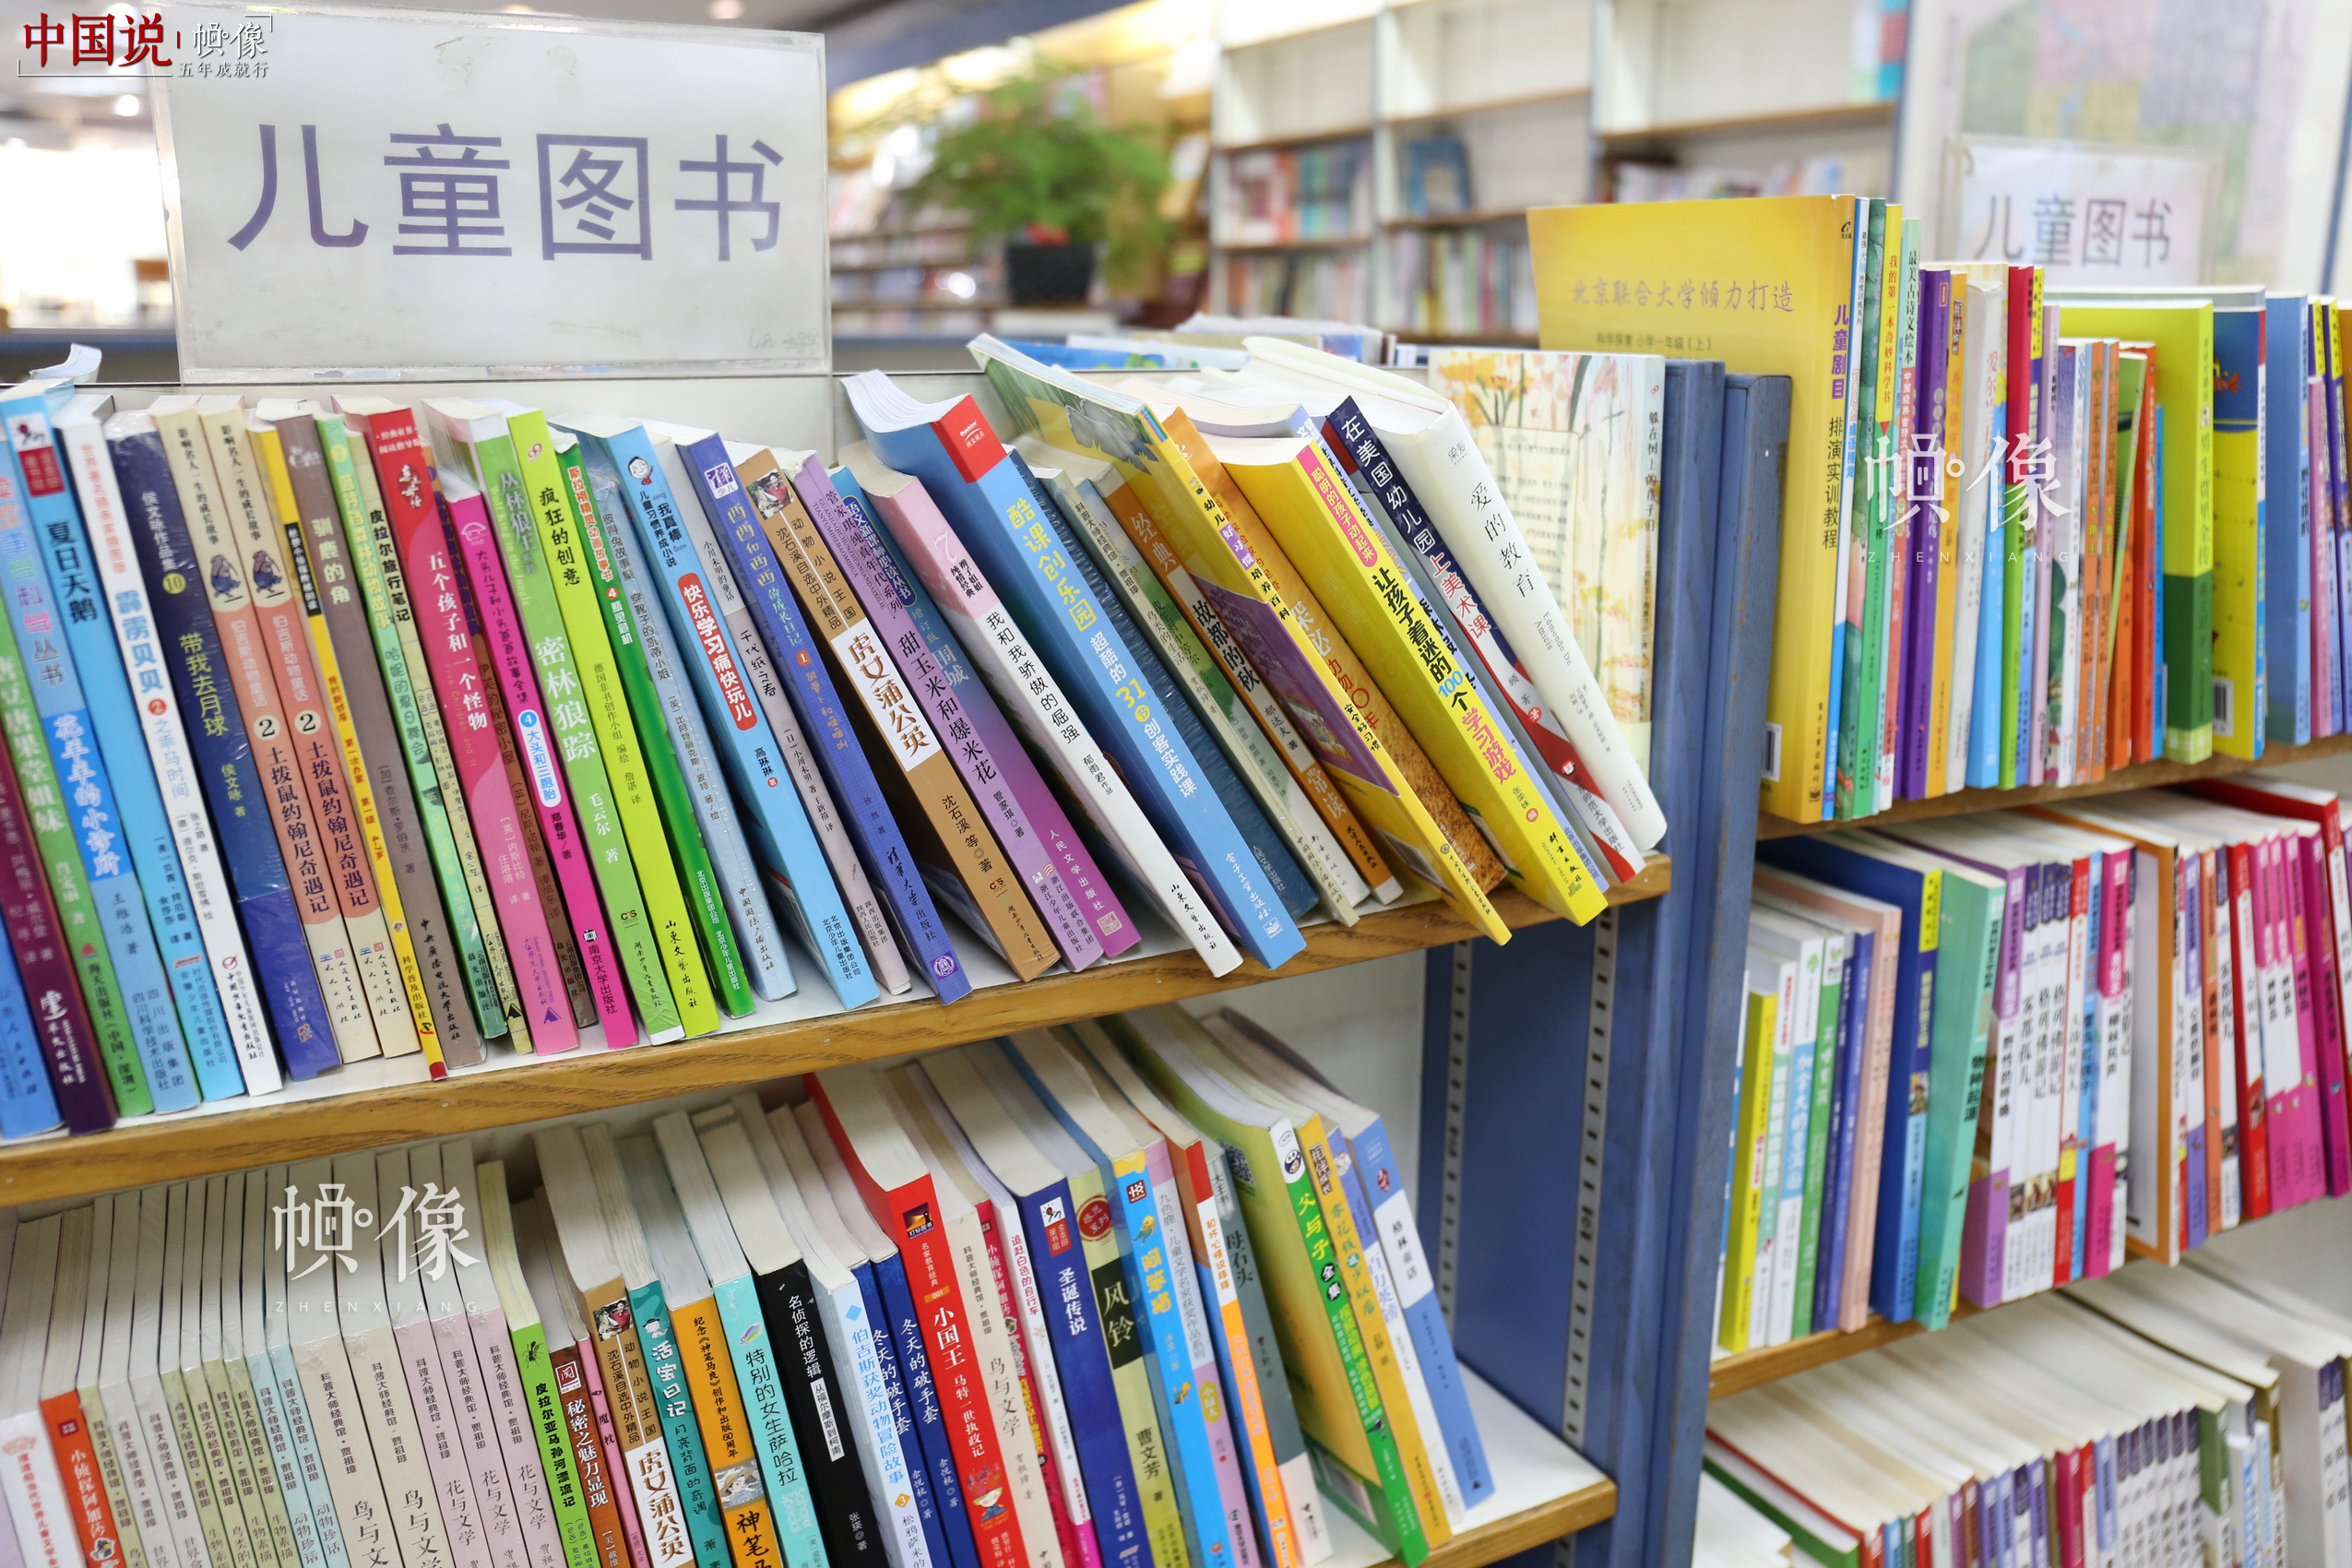 图为北京三联书店美术馆店一角陈列的儿童图书。 中国网记者 赵超 摄